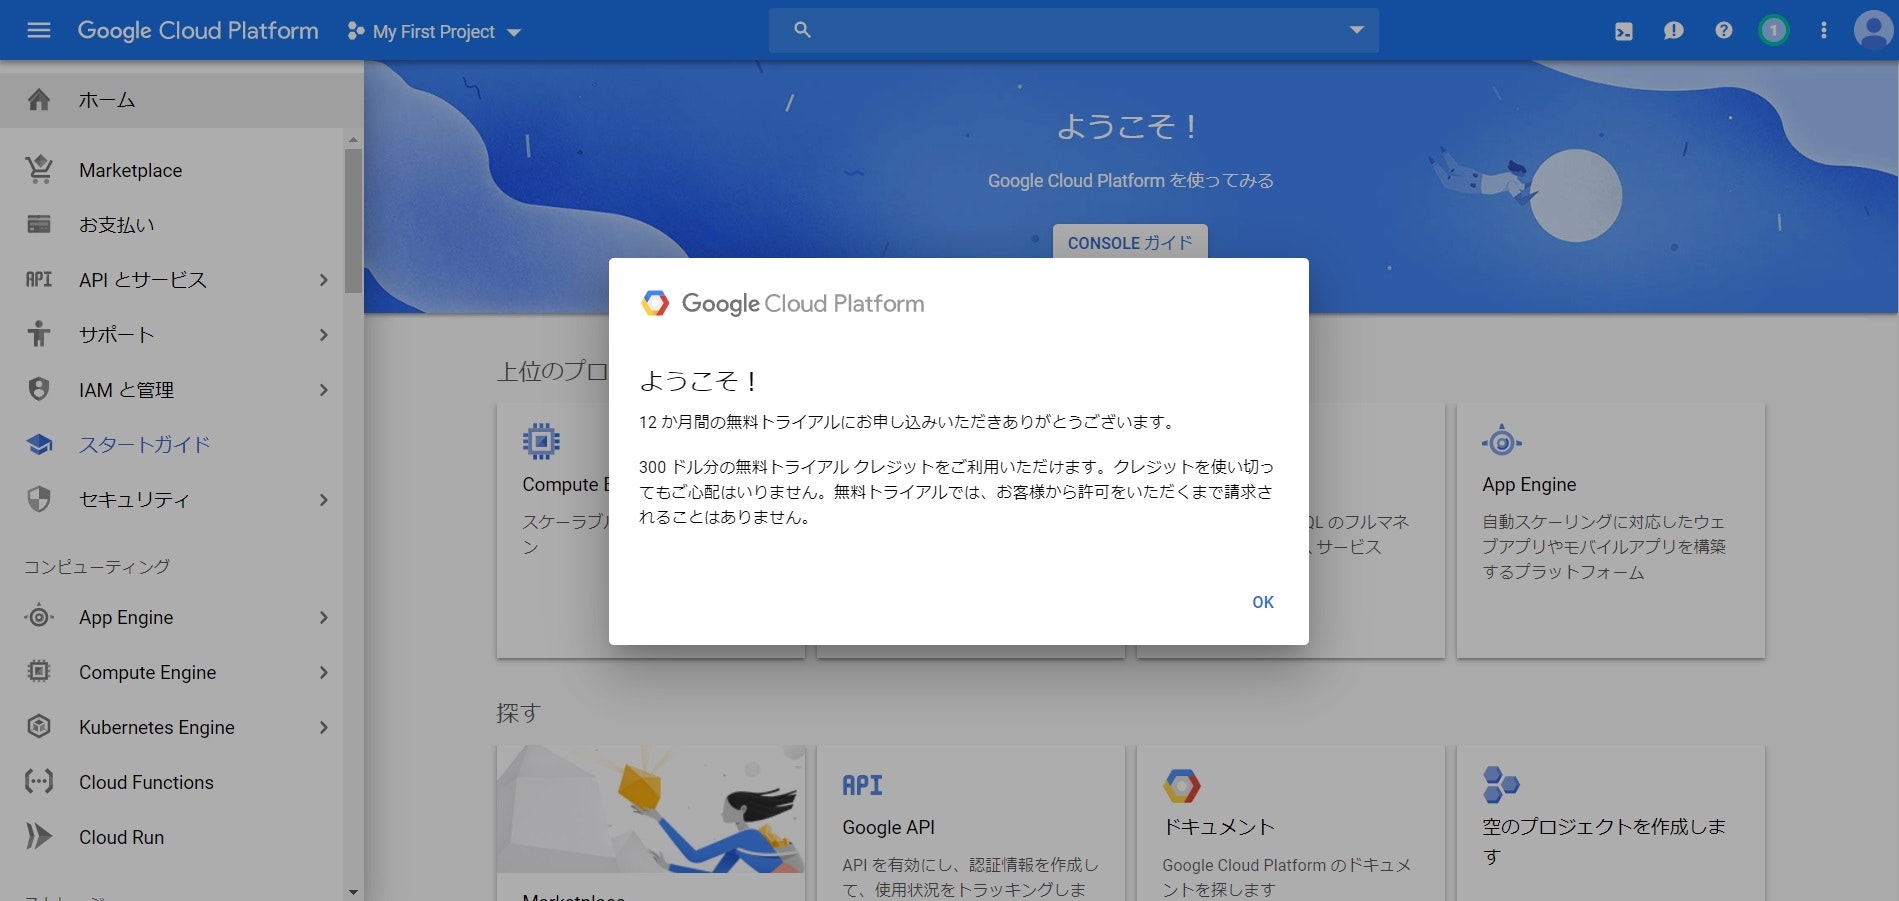 クラウド コンピューティング サービス  _  Google Cloud - Google Chrome 2019_08_15 16_35_30.jpg